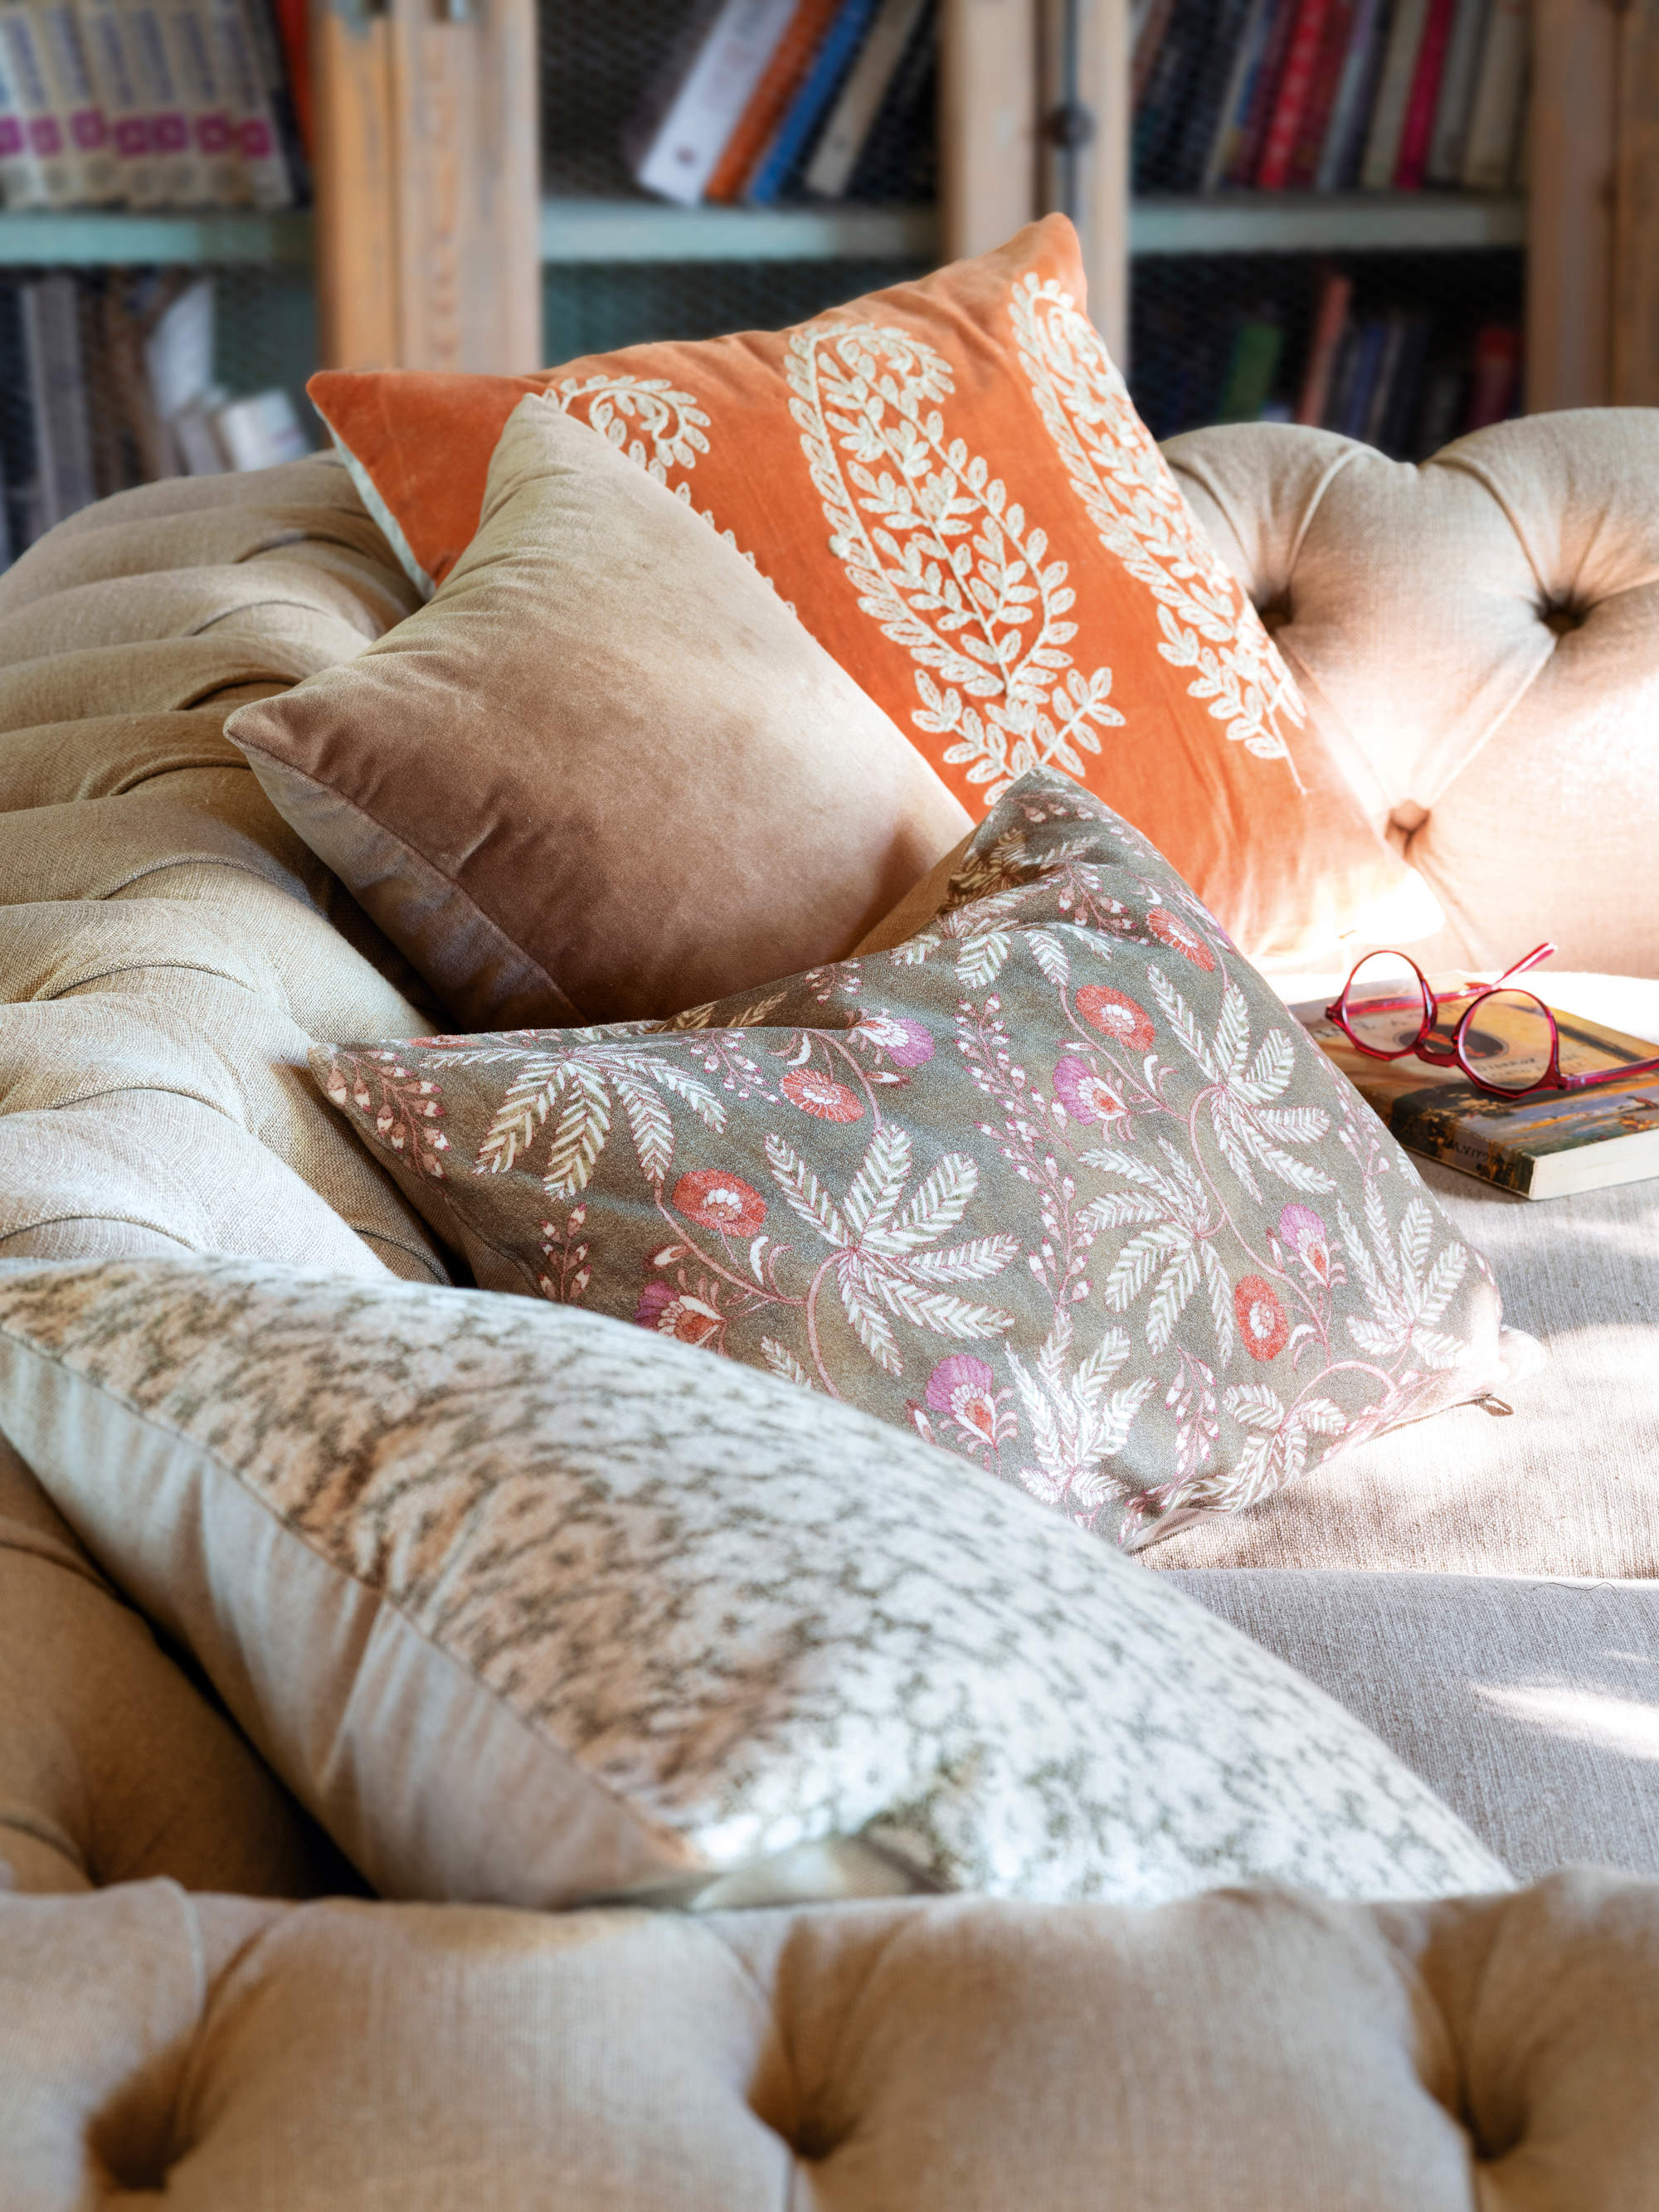 Detalle de cojines bordados y estampados sobre el sofá 